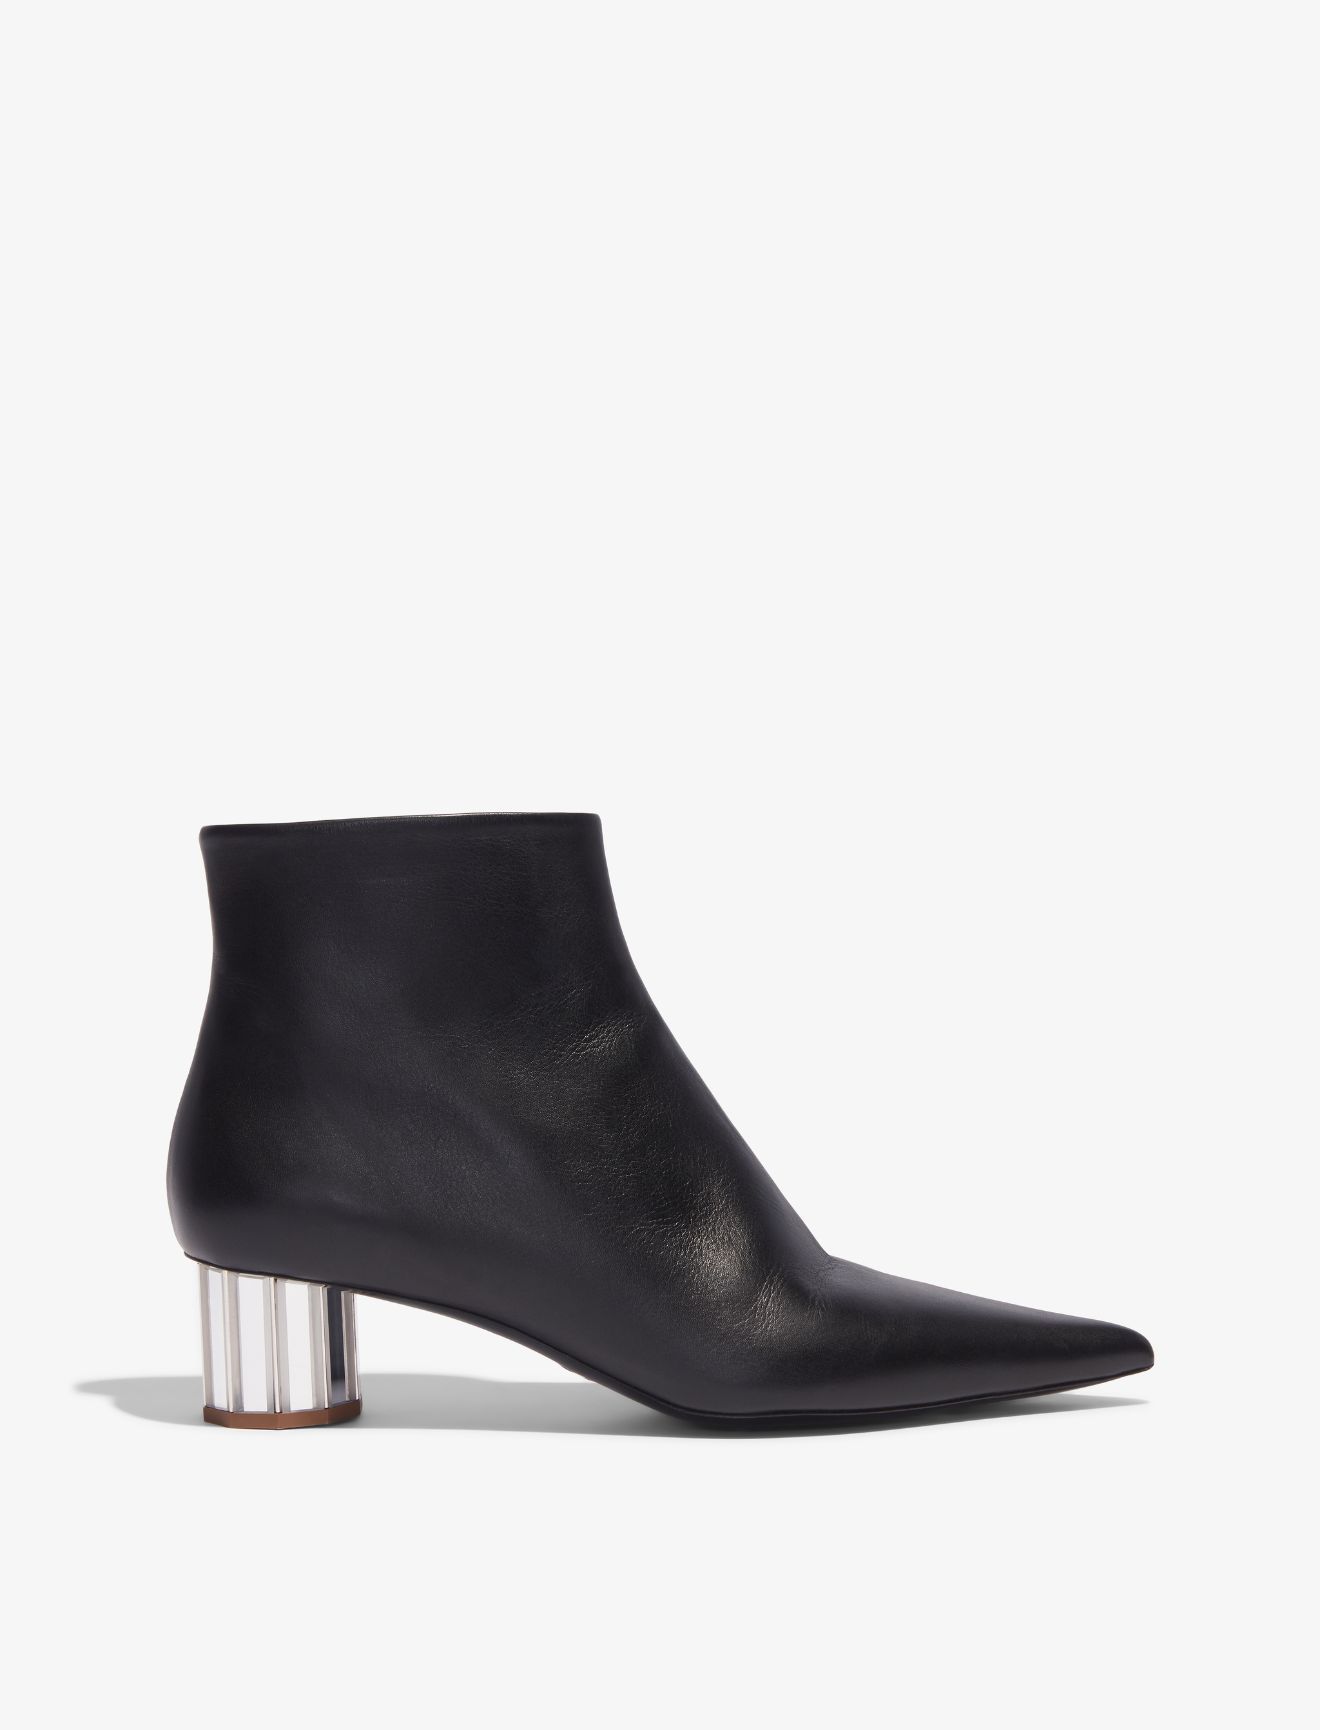 Mirrored Facet Heel Ankle Boots | Proenza Schouler LLC